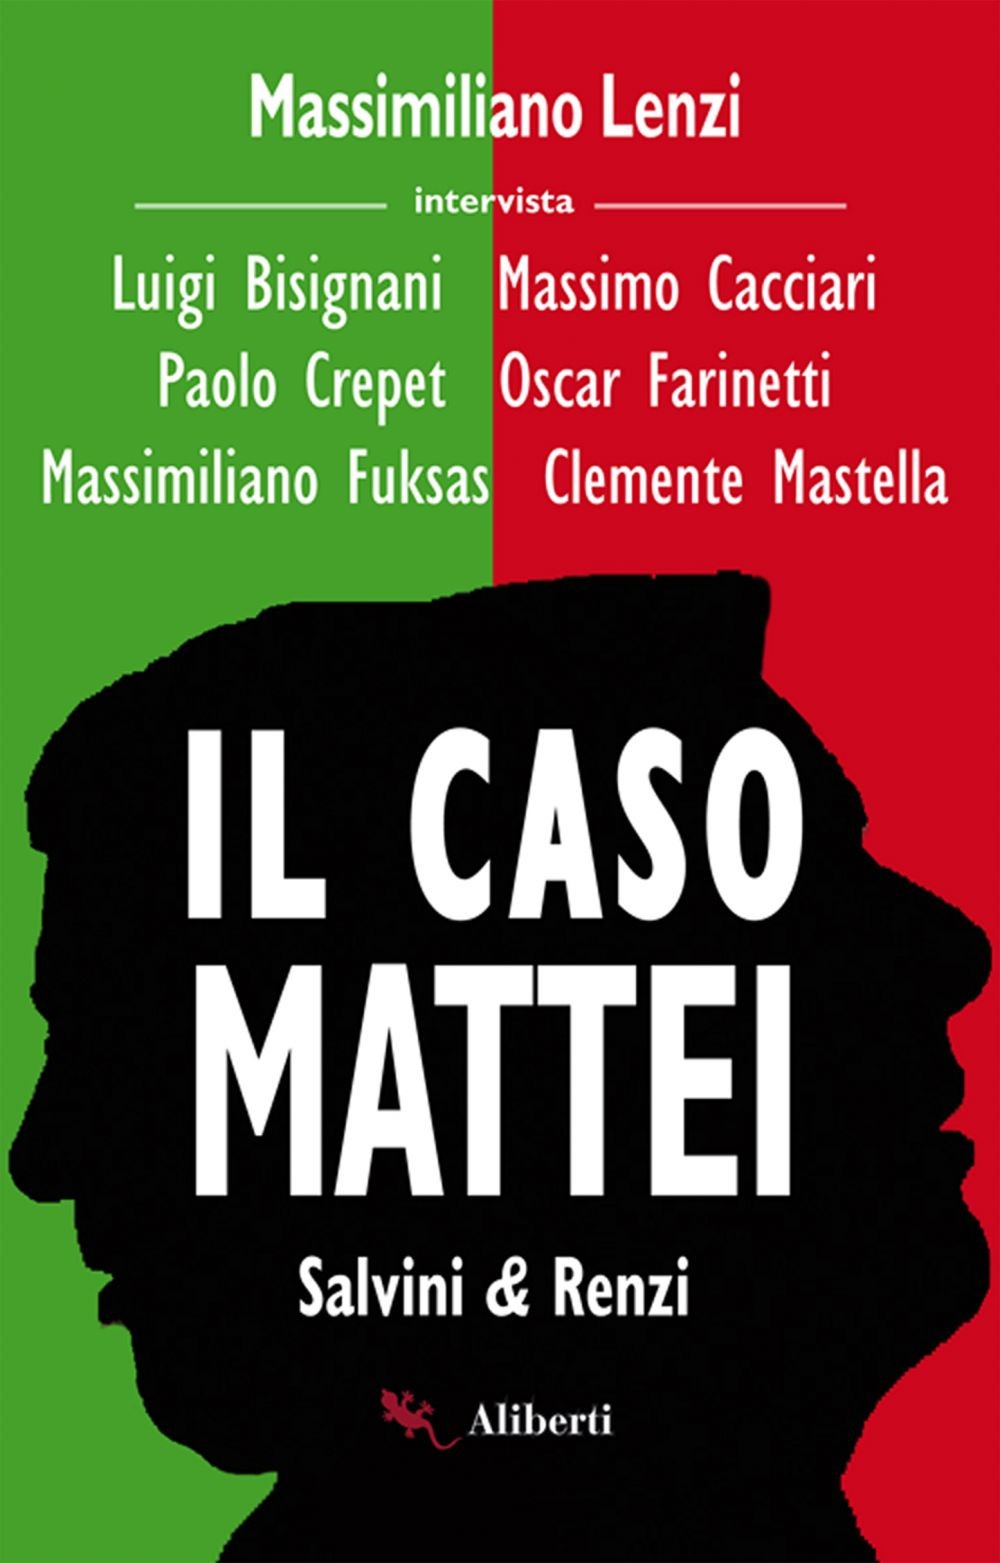 Il caso Mattei (Renzi e Salvini) - Librerie.coop